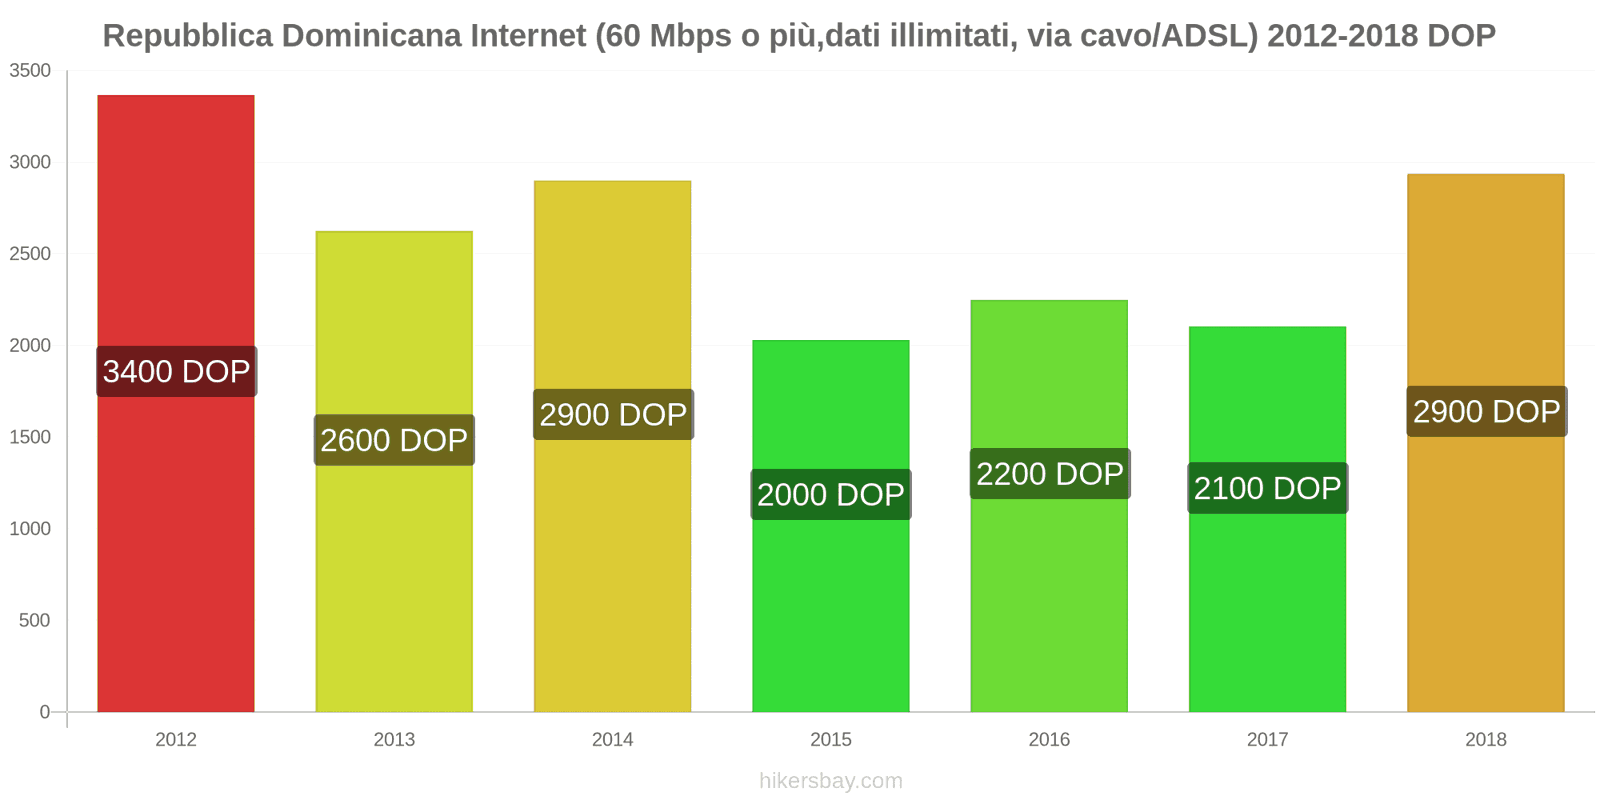 Repubblica Dominicana cambi di prezzo Internet (60 Mbps o più, dati illimitati, cavo/ADSL) hikersbay.com